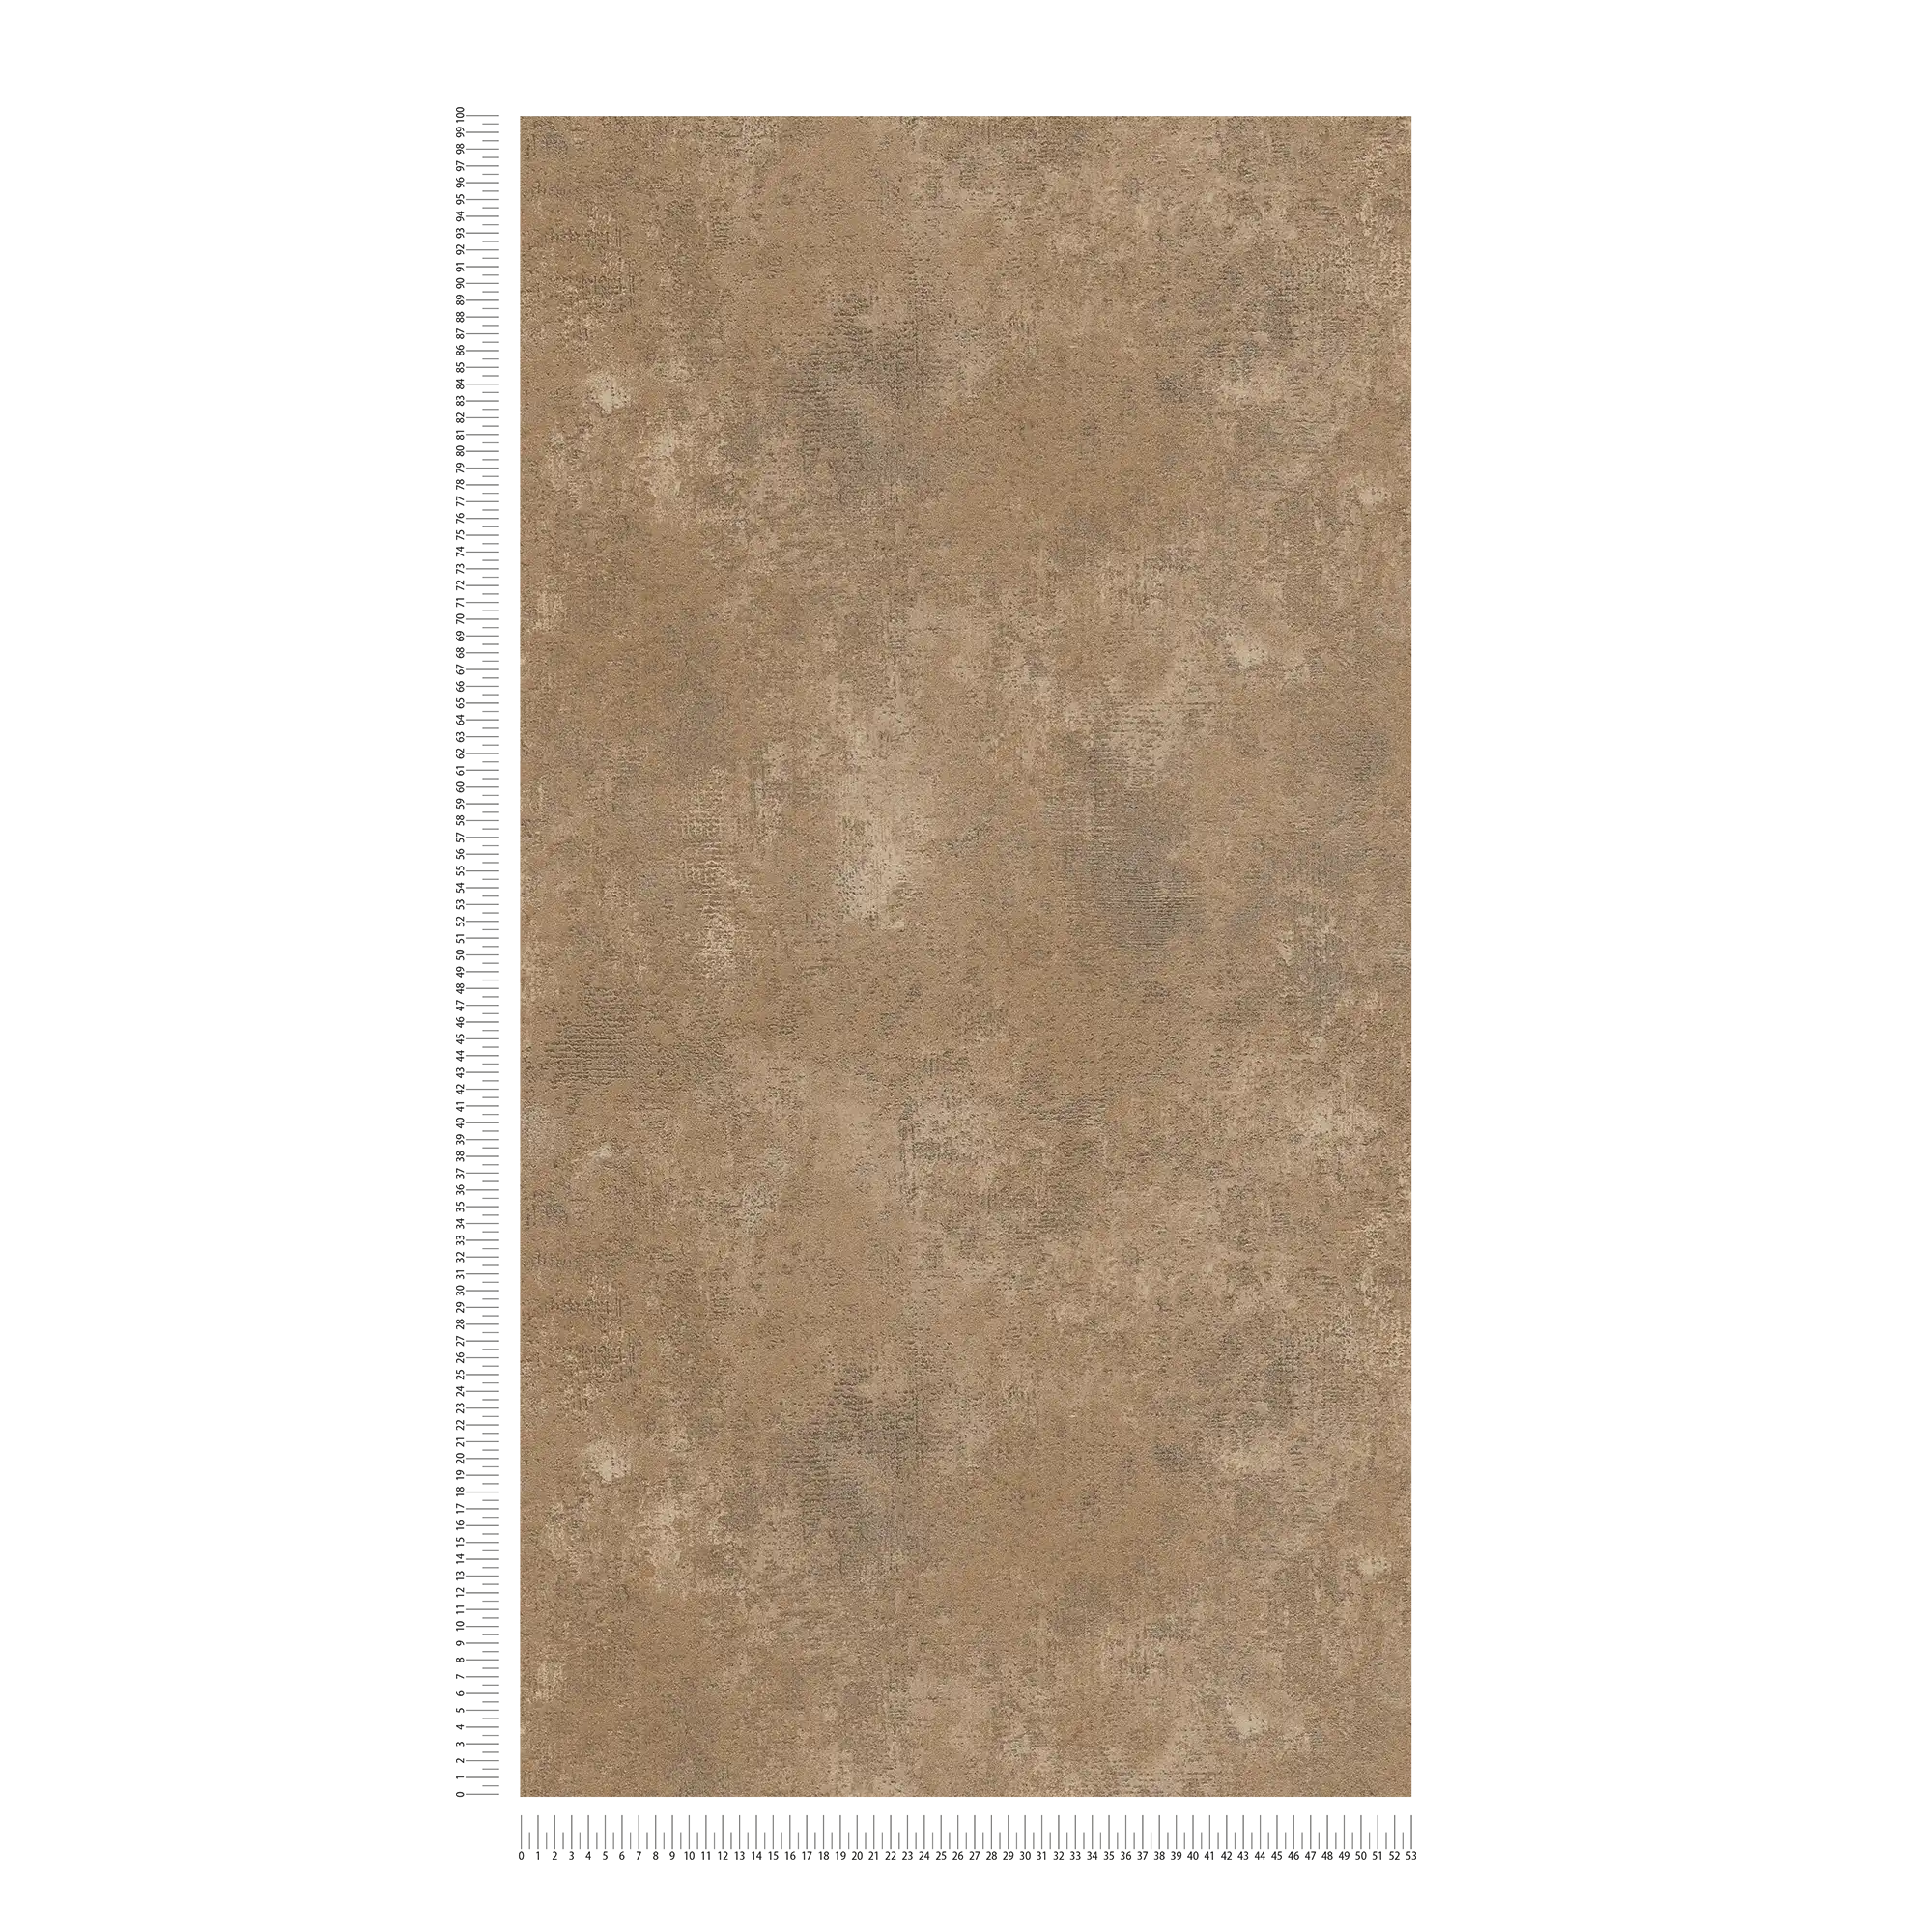             Carta da parati monocromatica in bronzo con accenti metallici - marrone
        